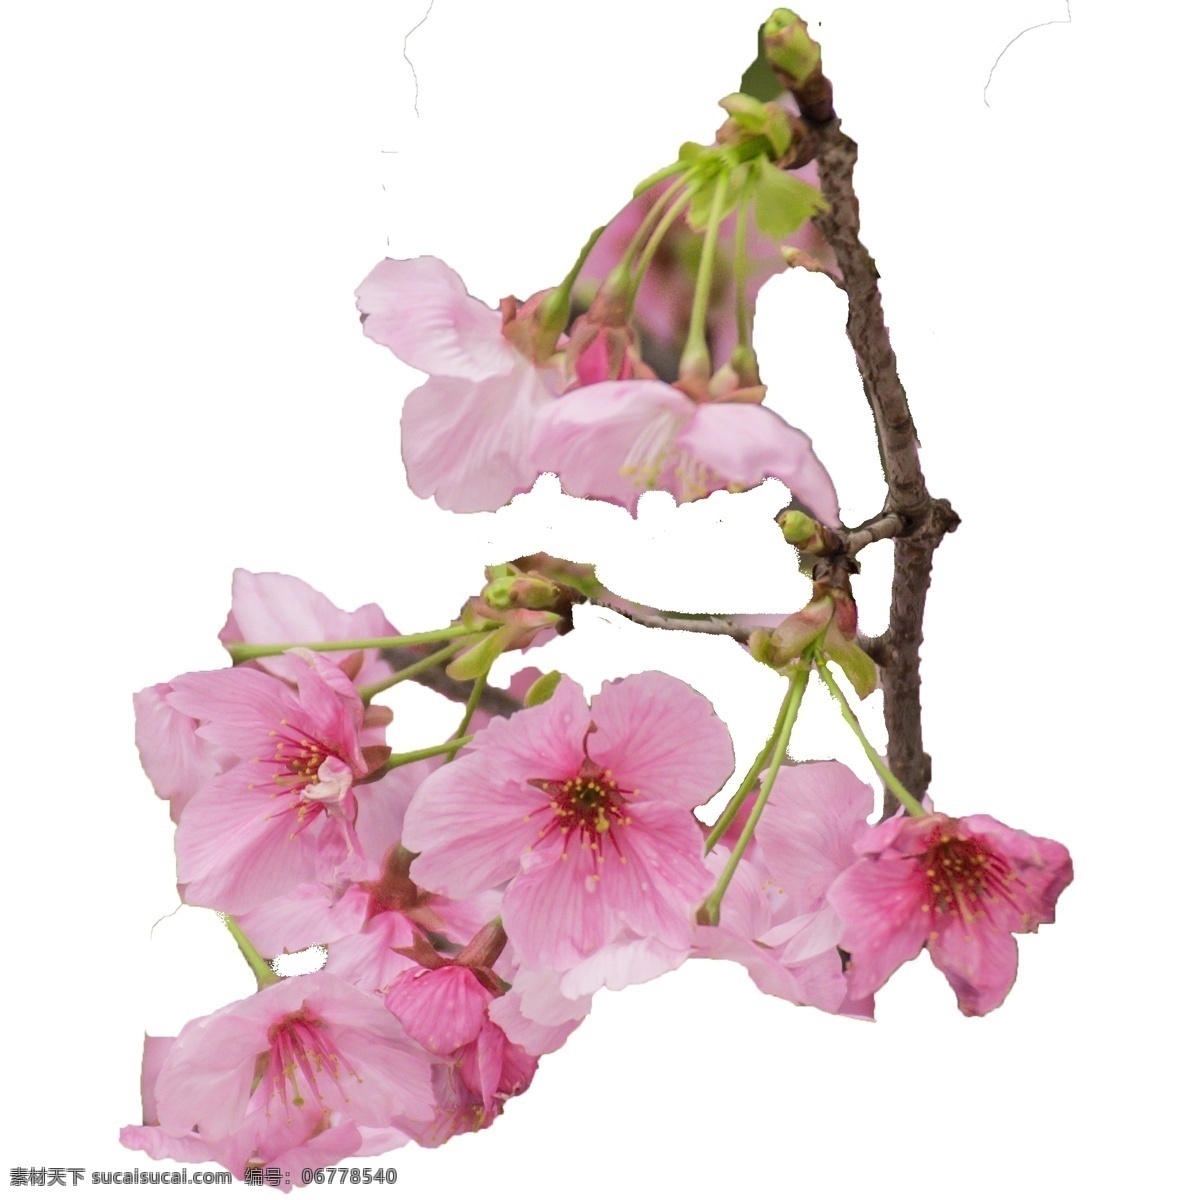 春日 樱花 观赏 景色 粉色樱花 季节性植物 绿植 多朵 美丽樱花 春日景观 粉嫩